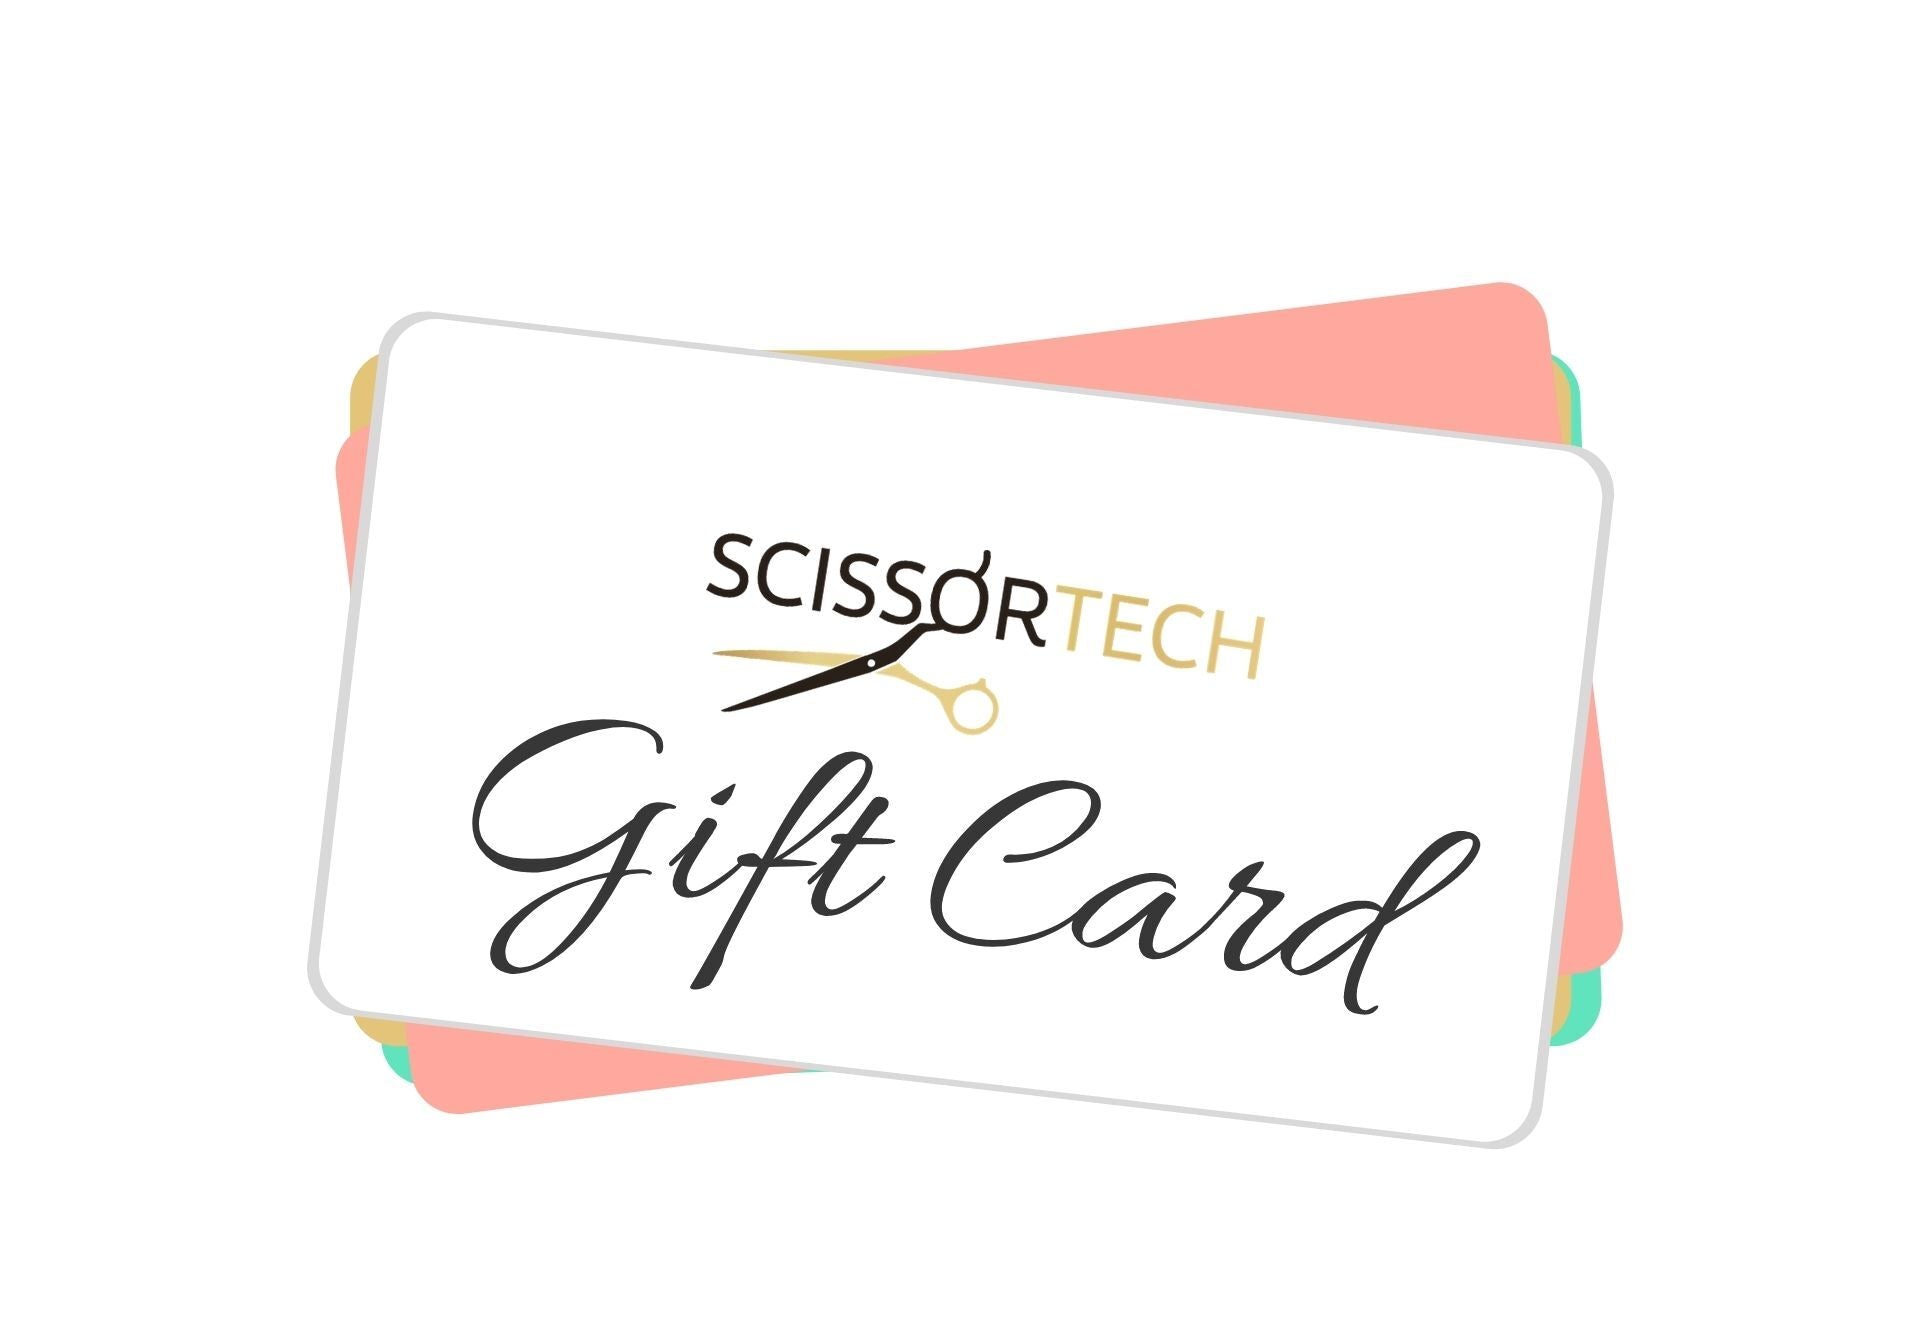 Scissor Tech Gift Card (1477290033235)